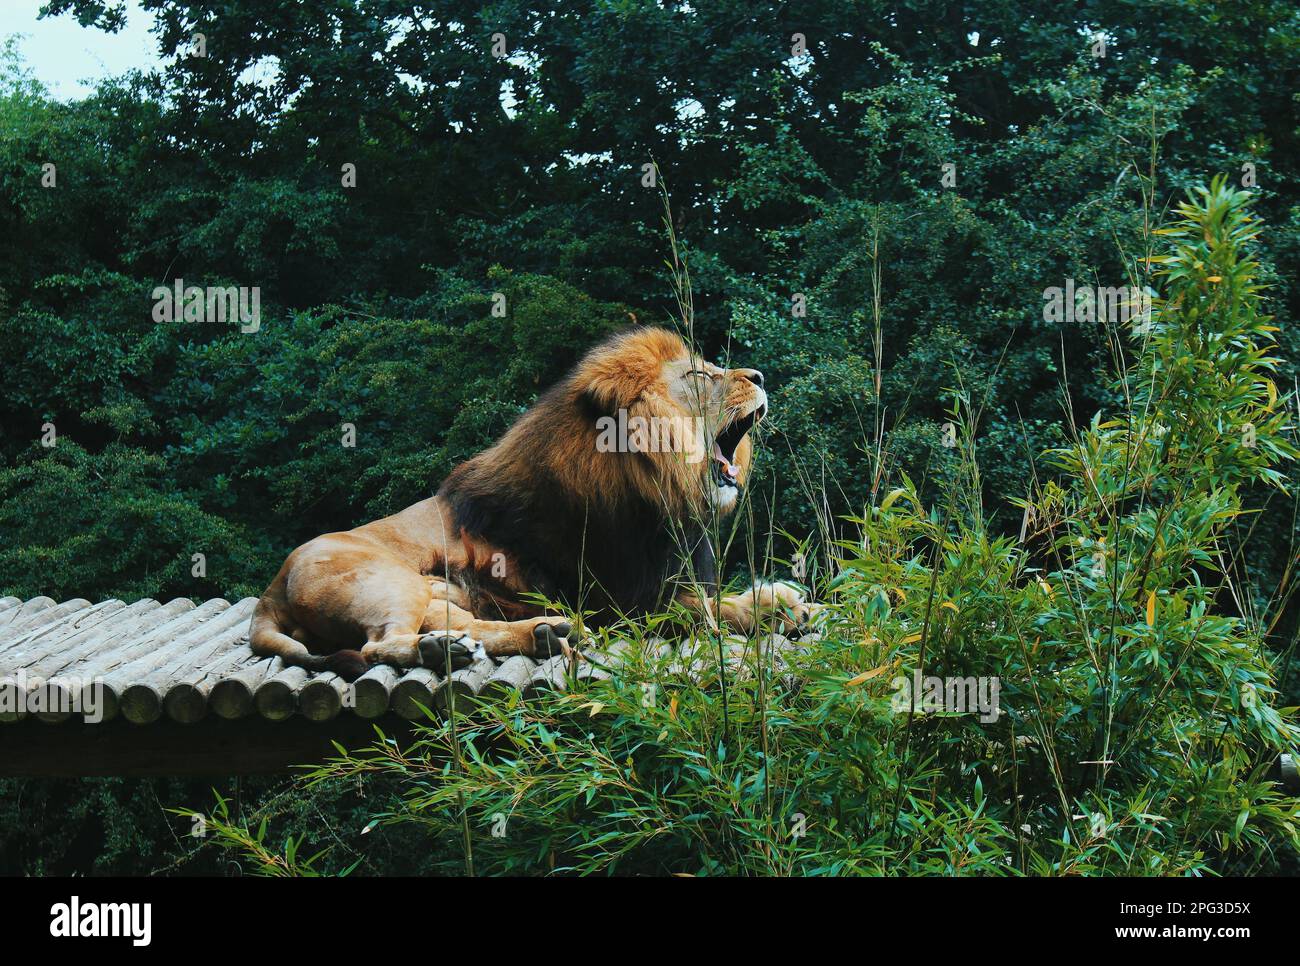 Un lion majestueux reposant sur un toit entouré de verdure luxuriante. Banque D'Images